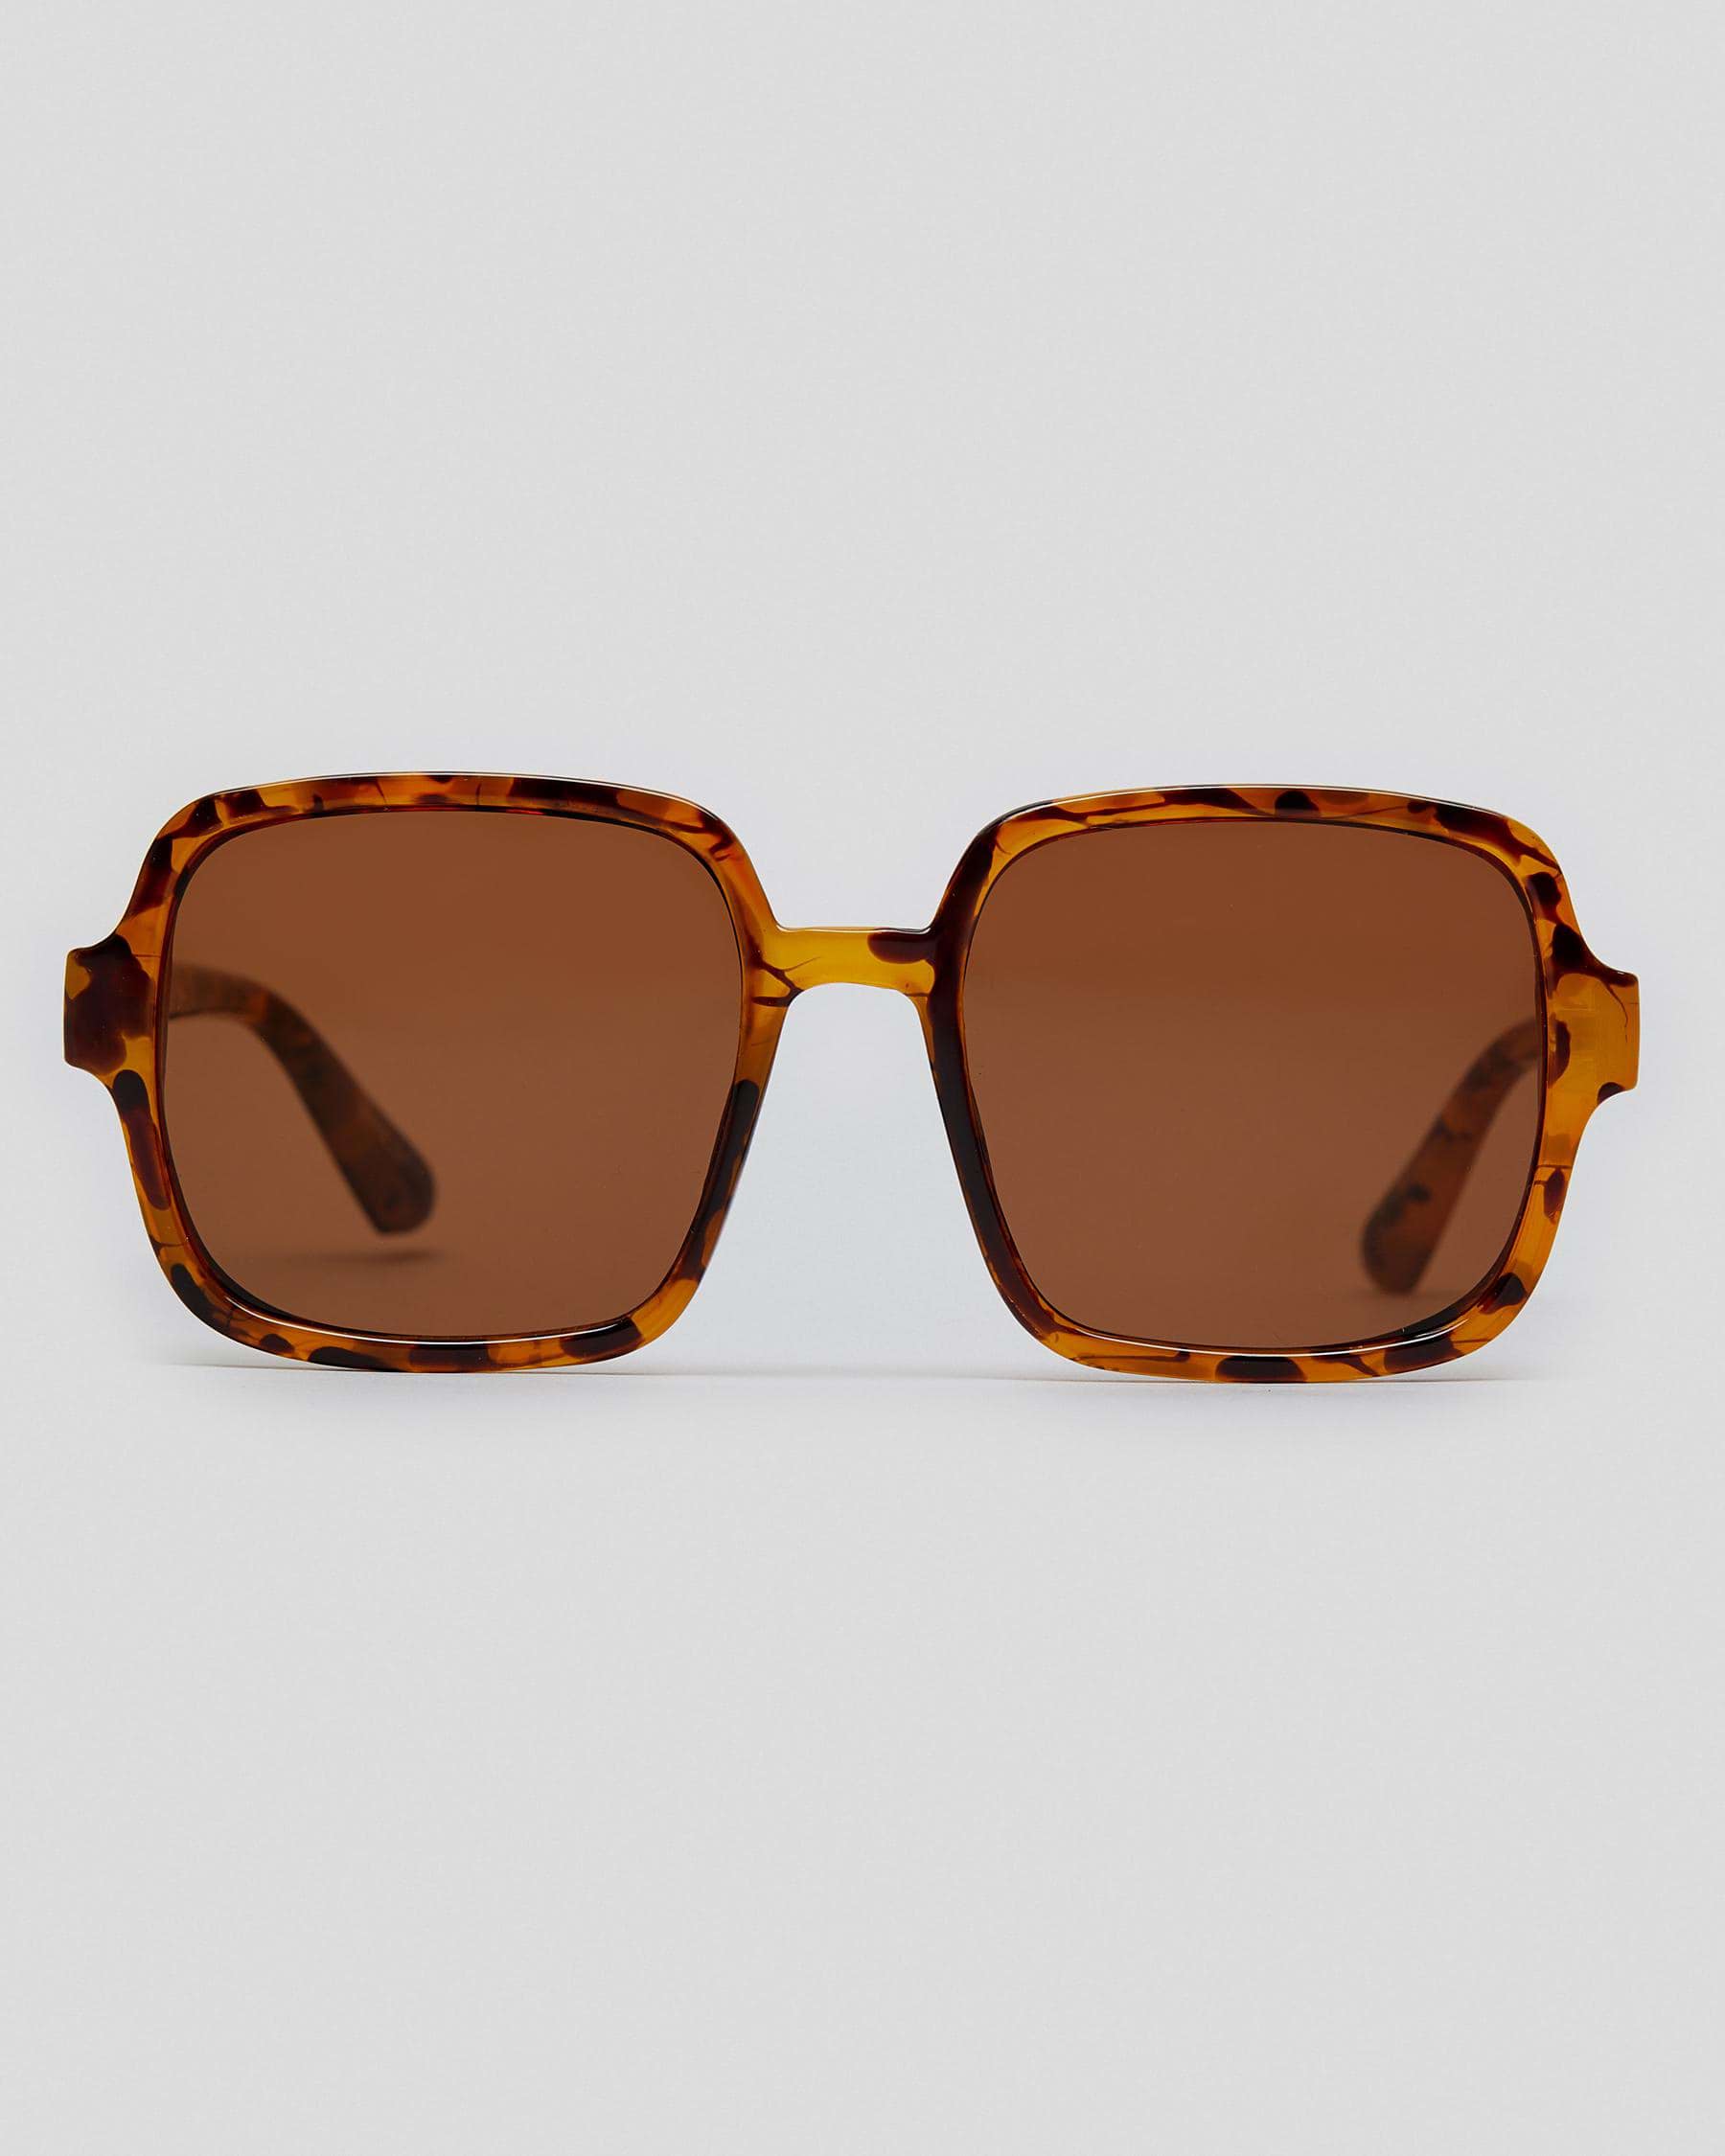 Indie Eyewear Edie Sunglasses In Tort/brown - Fast Shipping & Easy ...